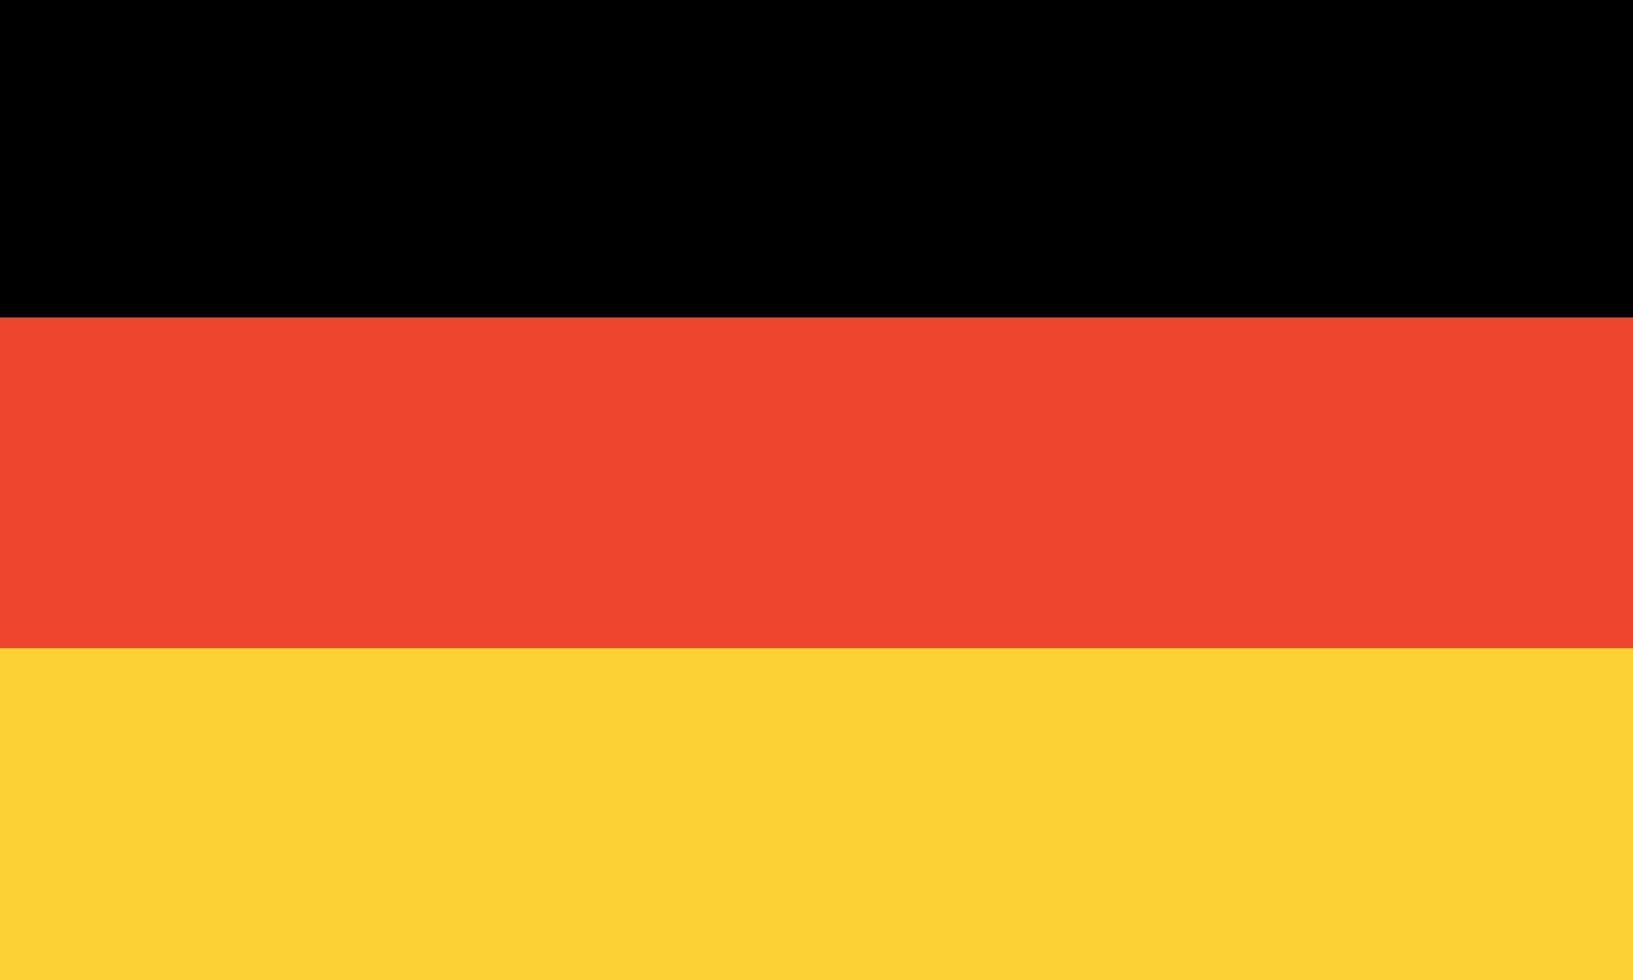 bandeira da Alemanha. proporções corretas. cores oficiais. bandeira nacional da alemanha. vetor